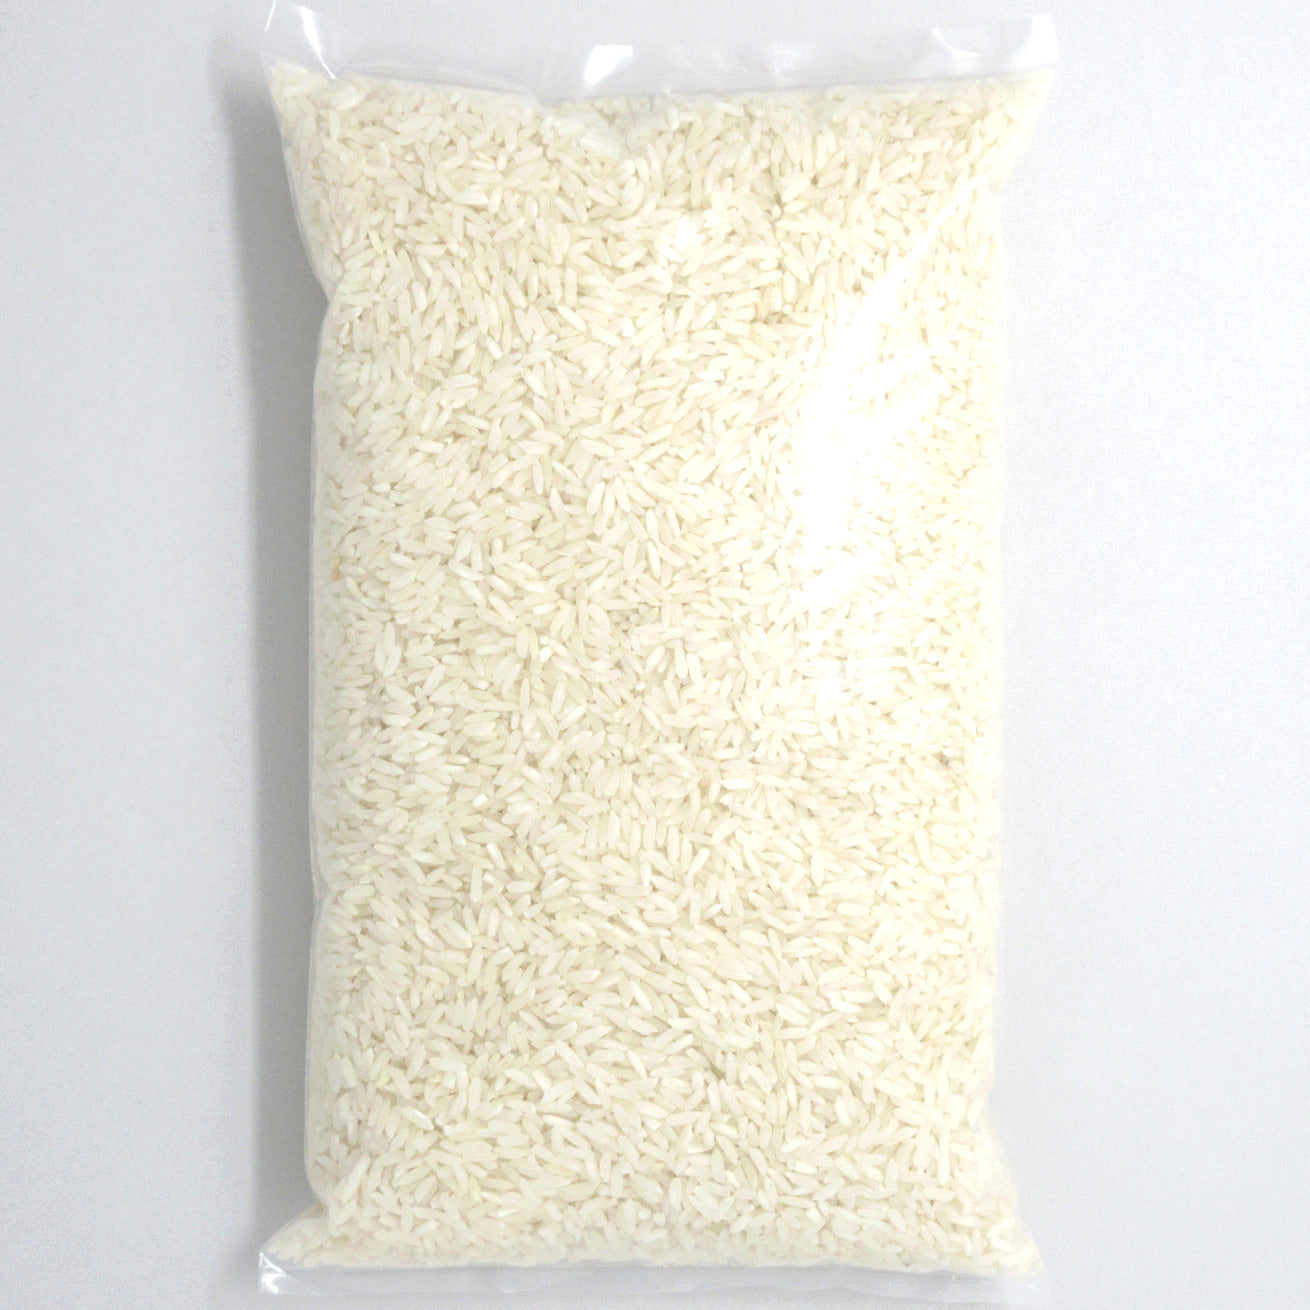 Flour Barrel product image - Long Grain White Rice